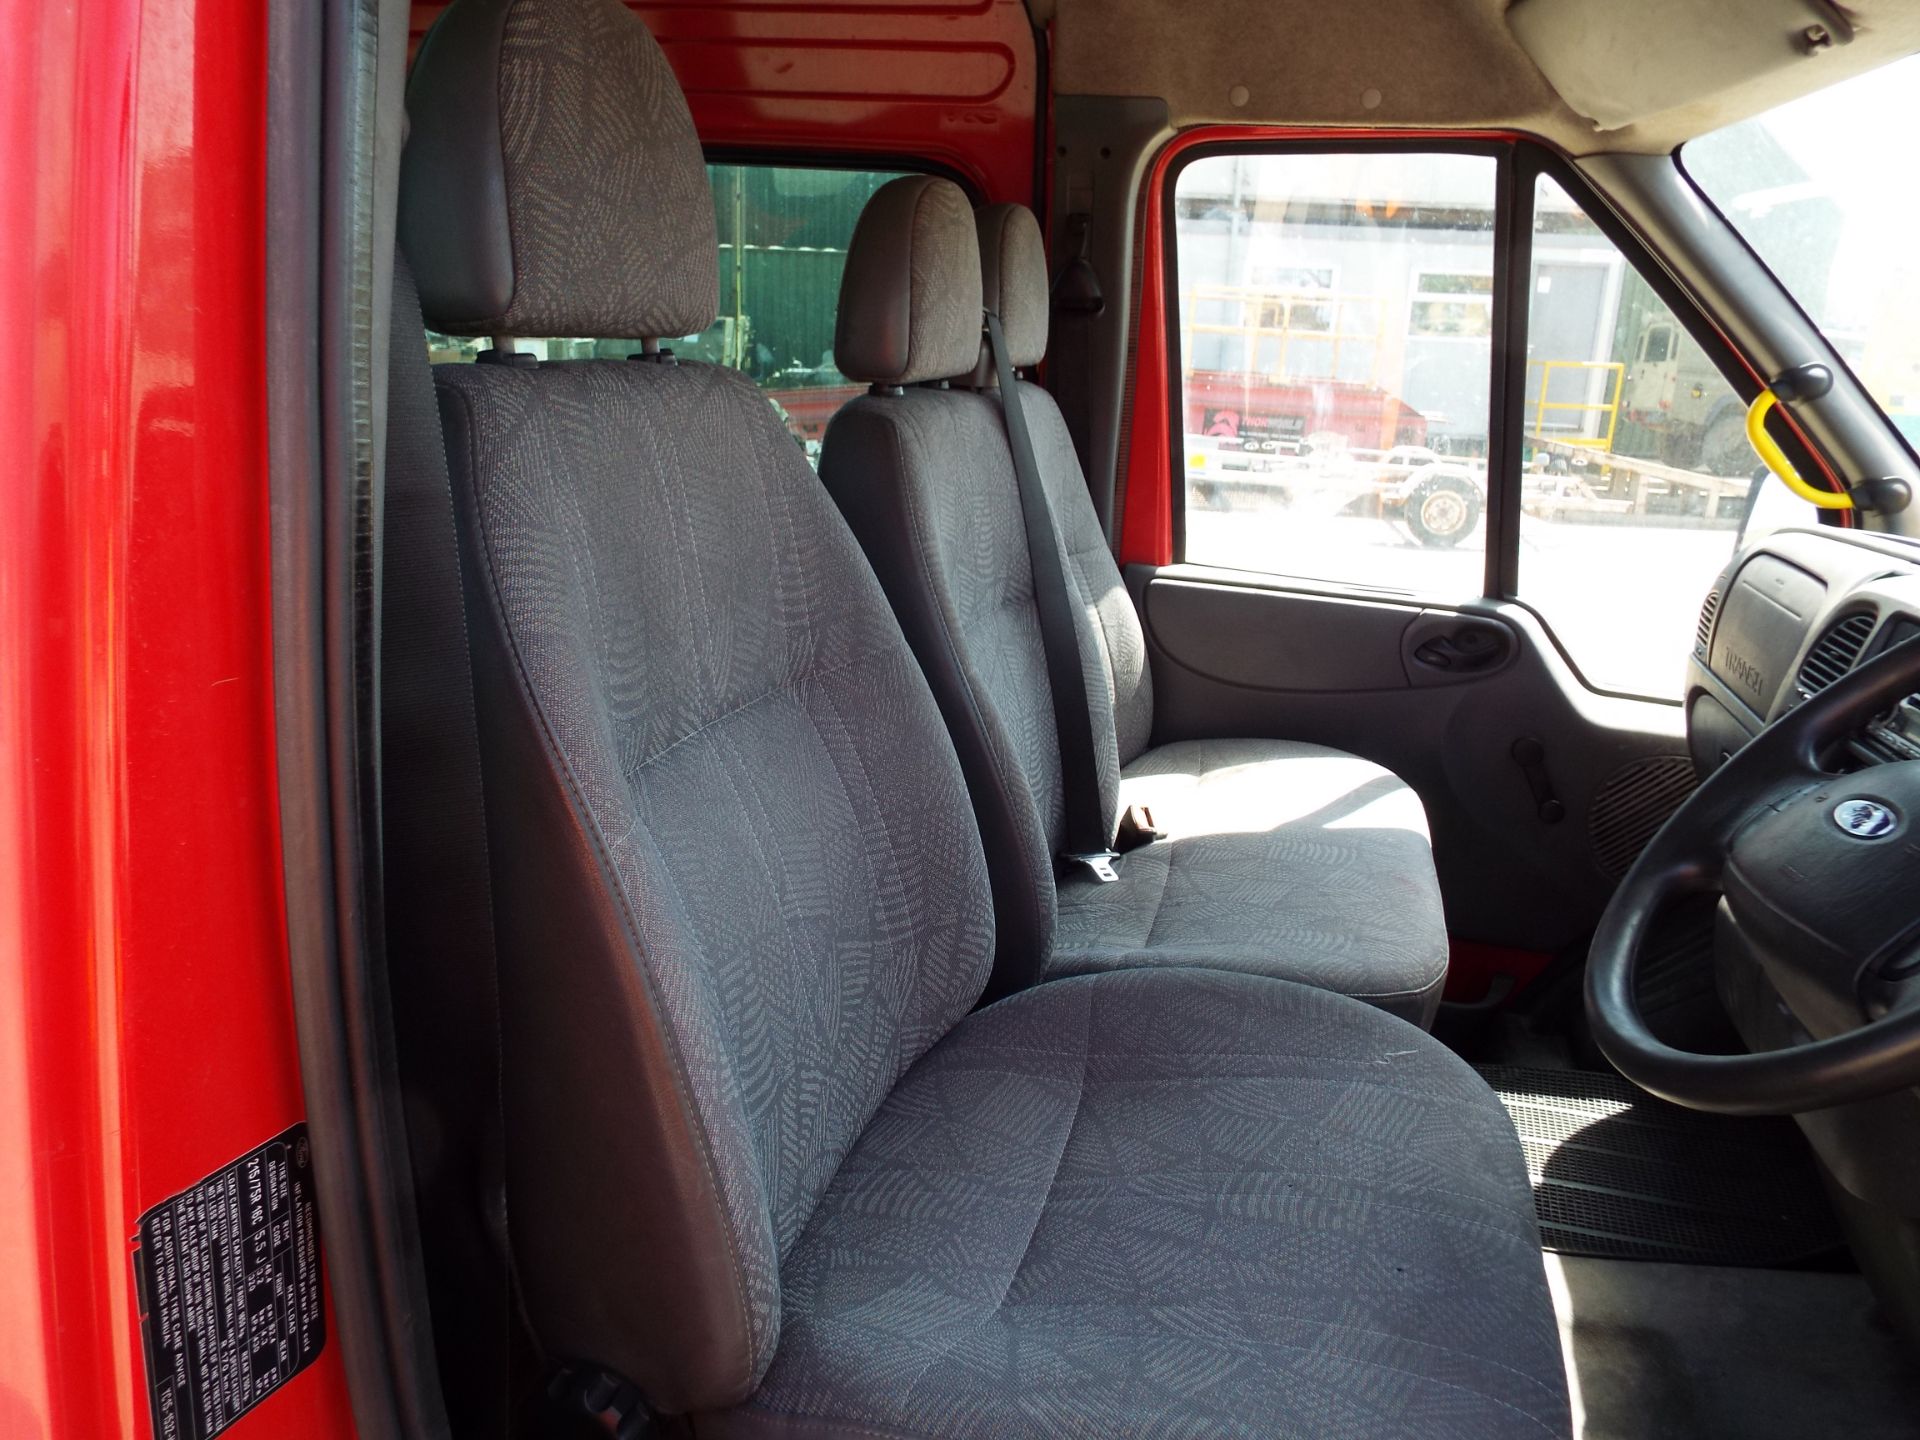 Ford Transit 9 Seat Minibus - Image 12 of 18